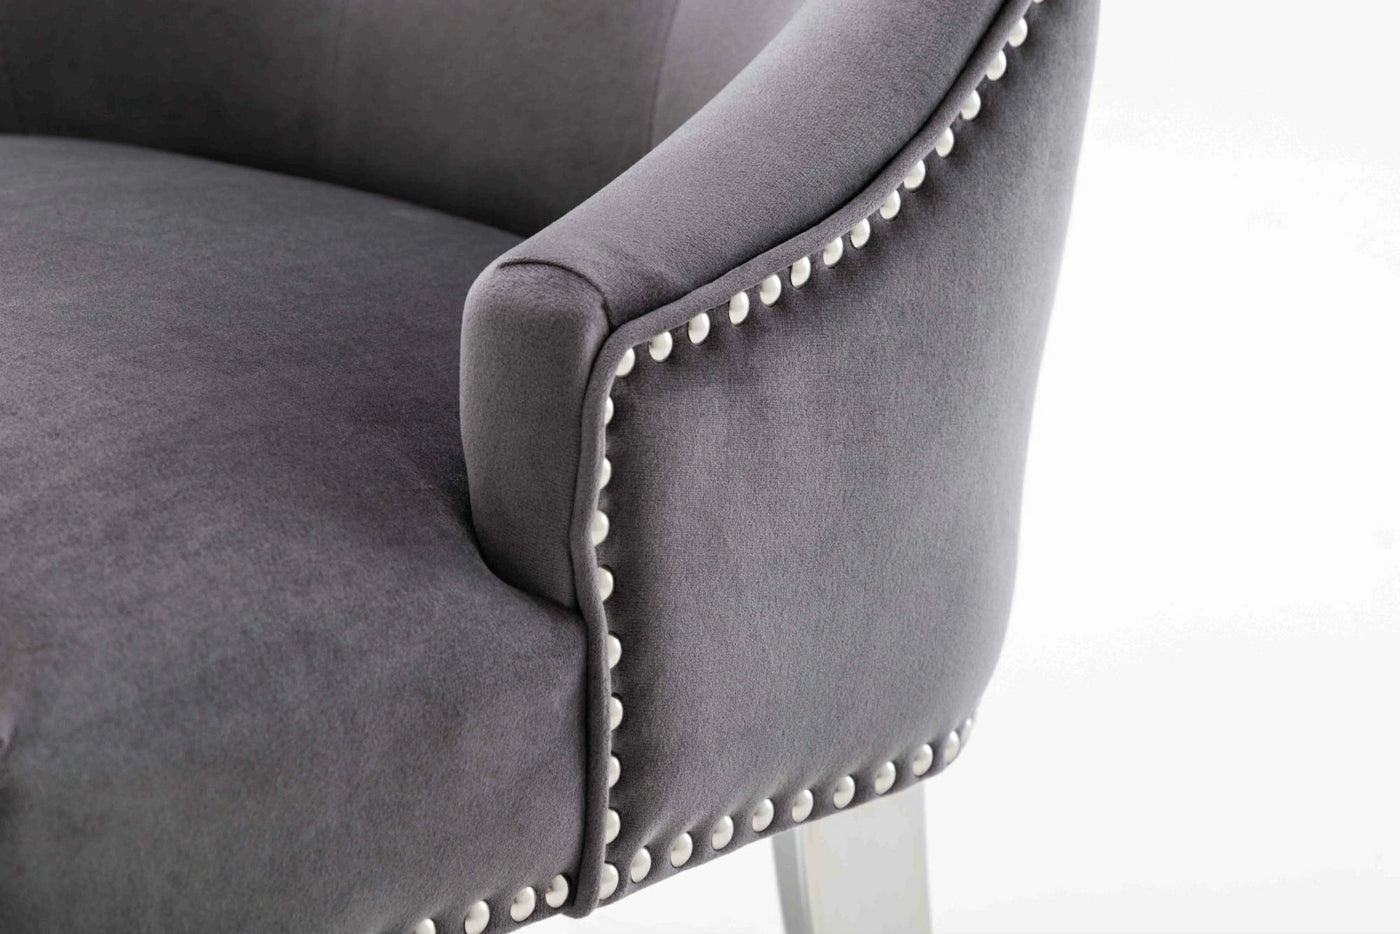 Knightsbridge Dark Grey French Velvet Knocker Back Dining Chair With Chrome Legs-Esme Furnishings